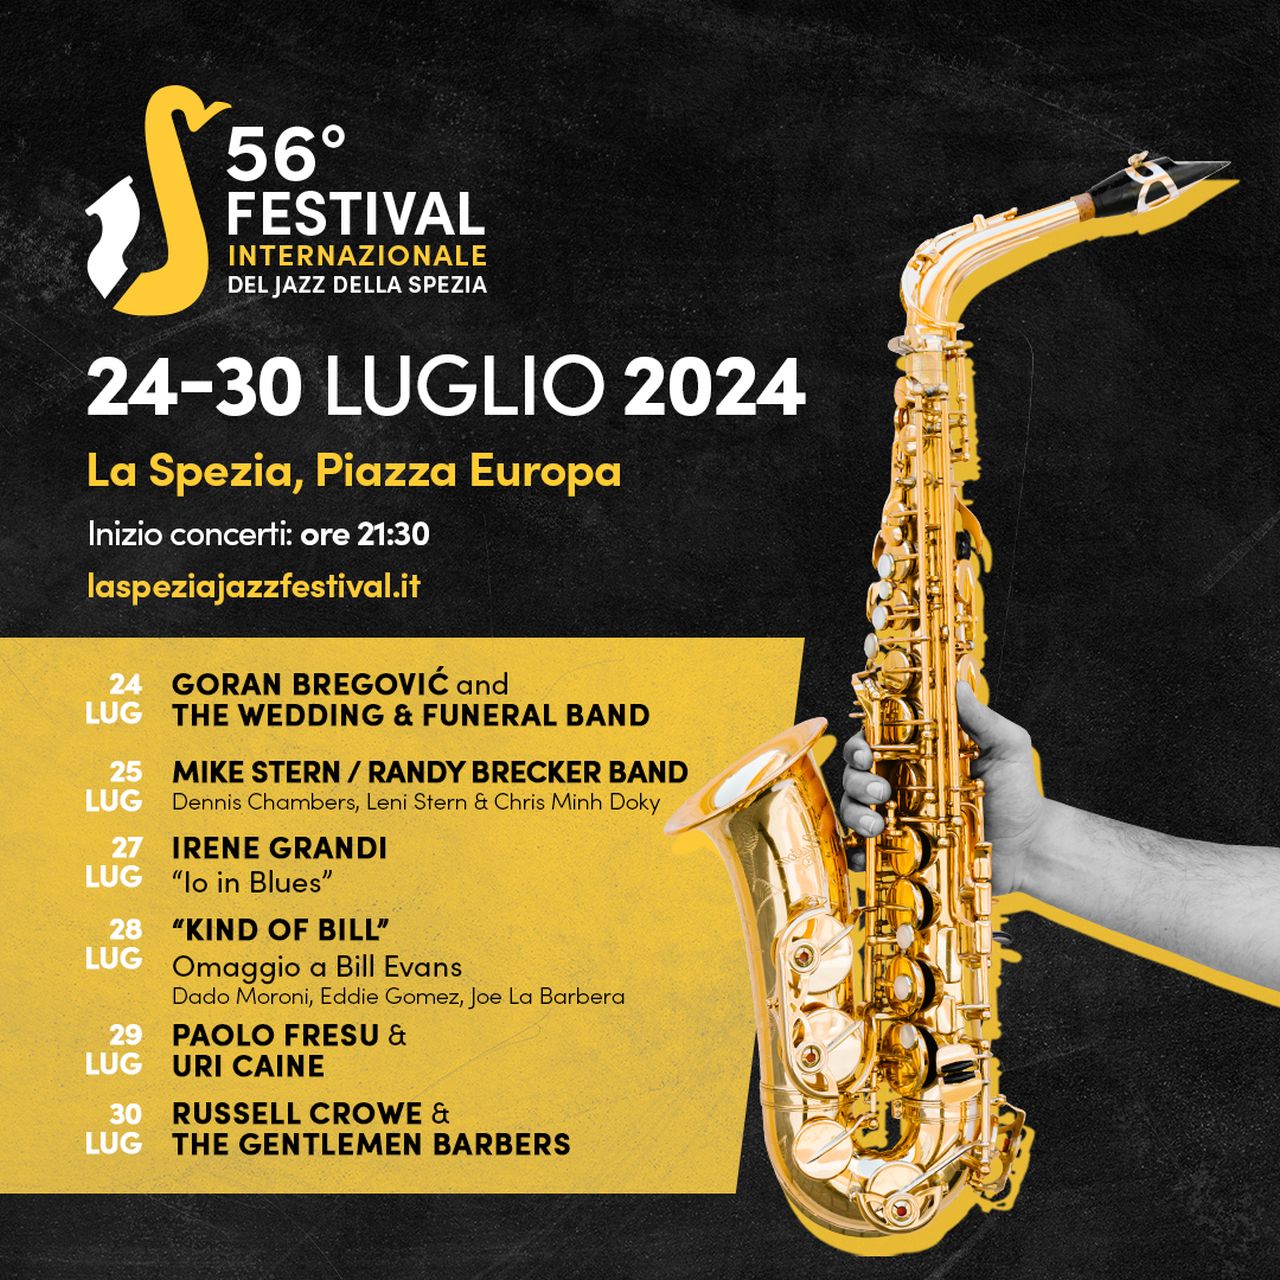 Dal 24 al 30 luglio a La Spezia, torna il Festival Internazionale del Jazz